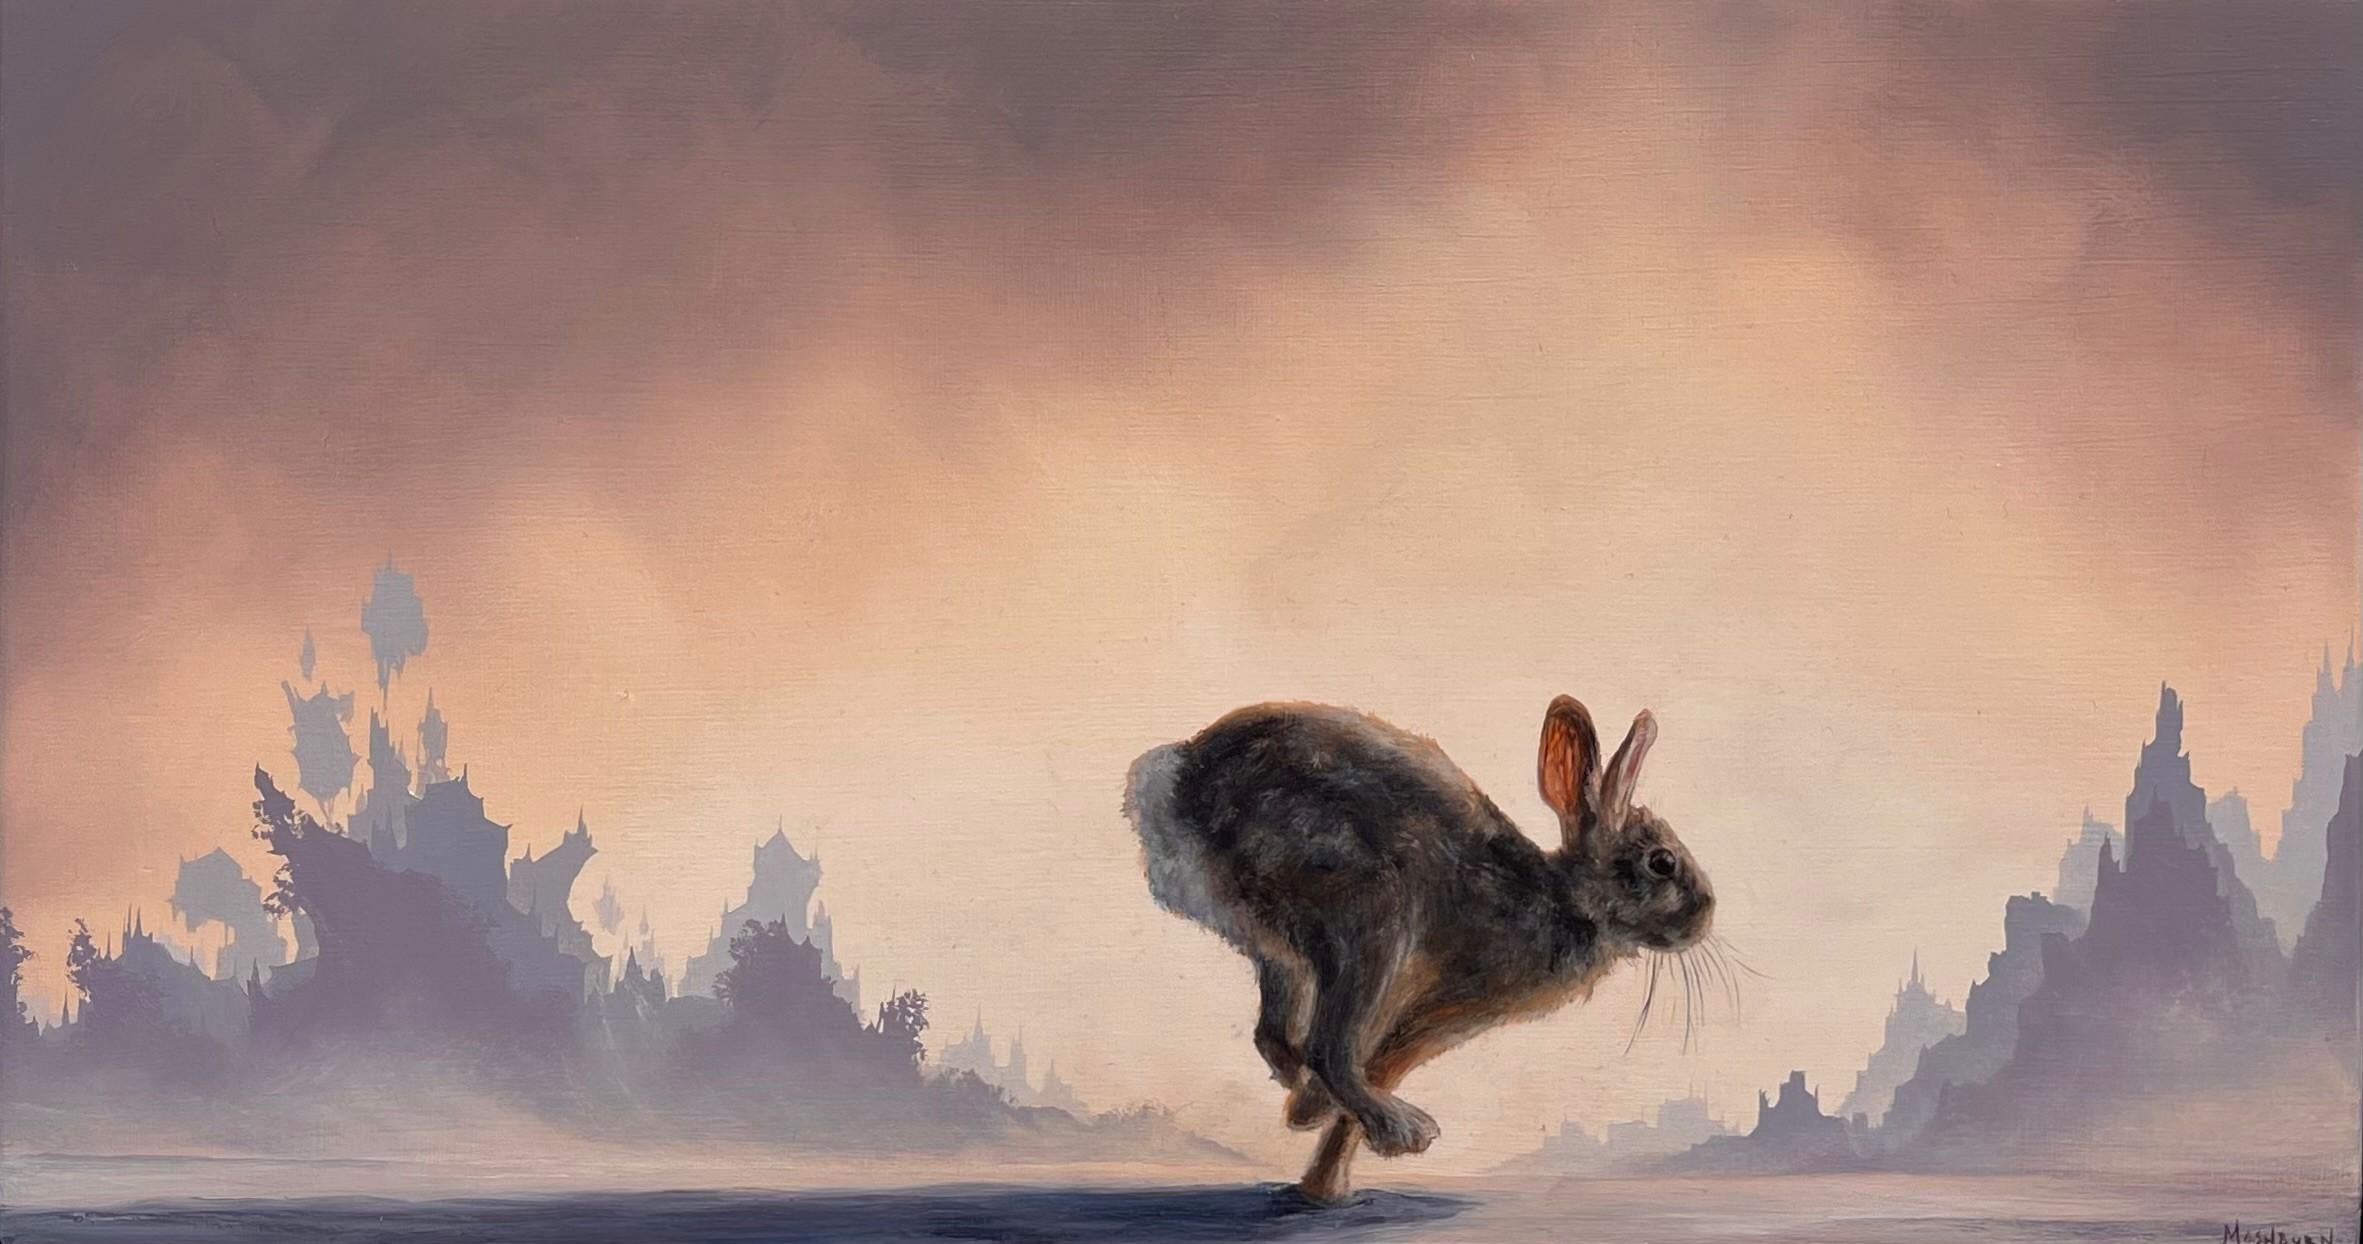 Brian Mashburn Landscape Painting – "Running Rabbit" Original Landschafts-Ölgemälde